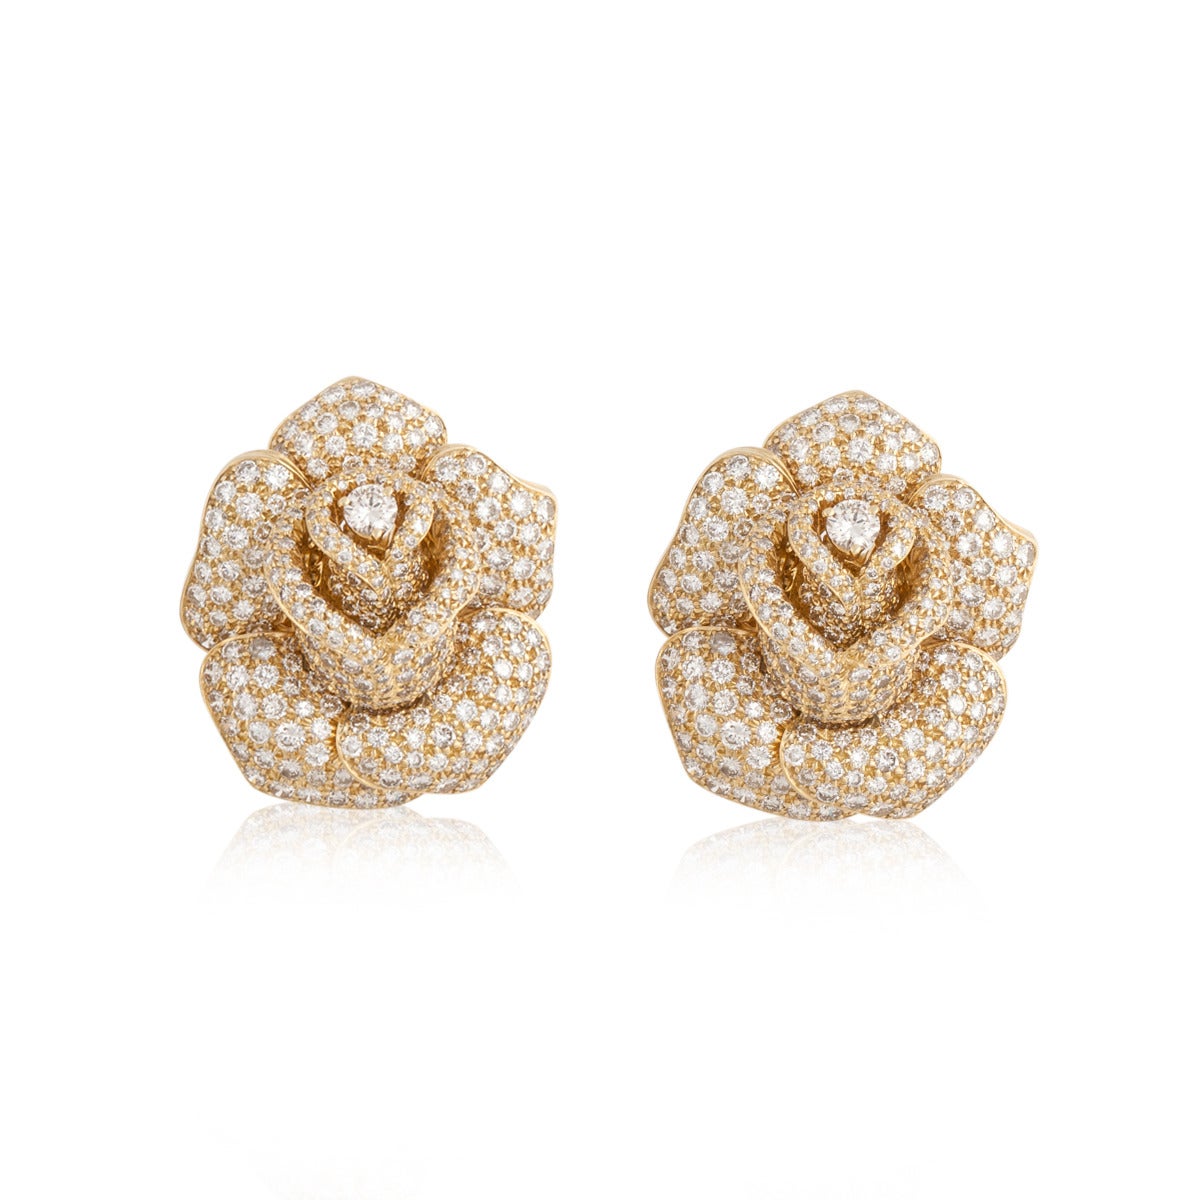 Round Cut Giovane Rose Pavé Diamond Earrings in 18K Gold